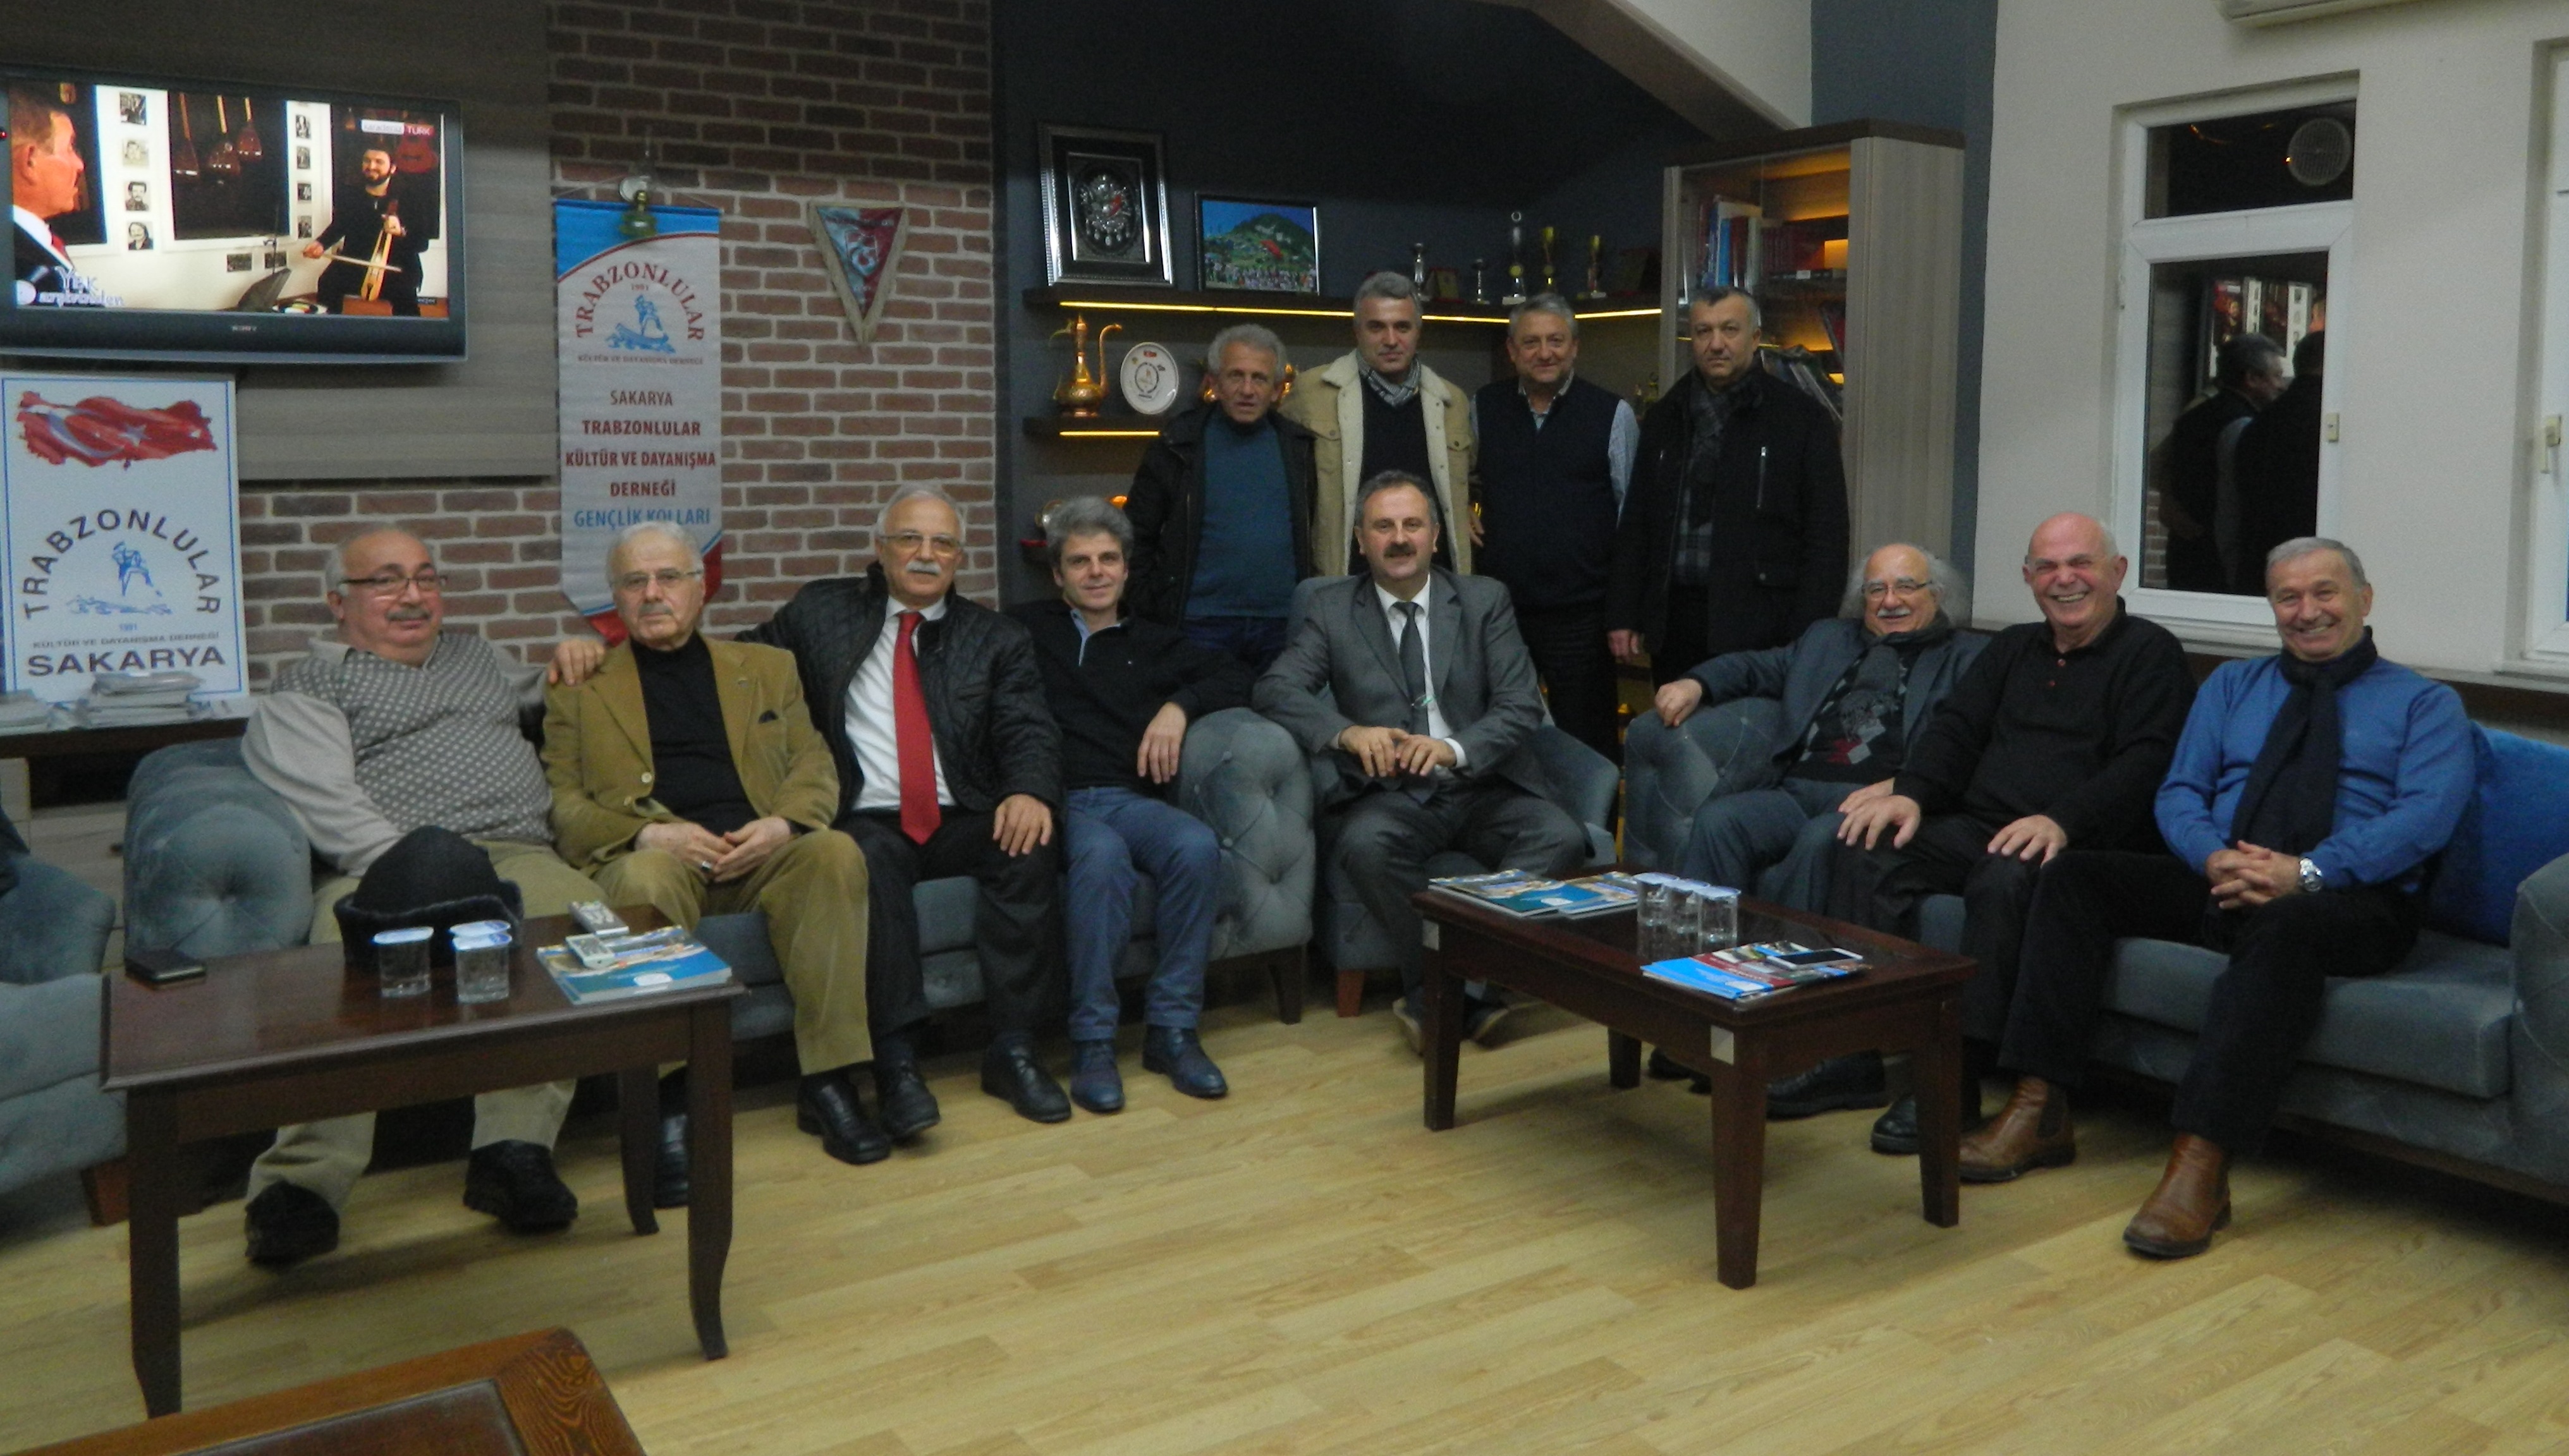 Trabzonlular Derneği kongreye gidiyor